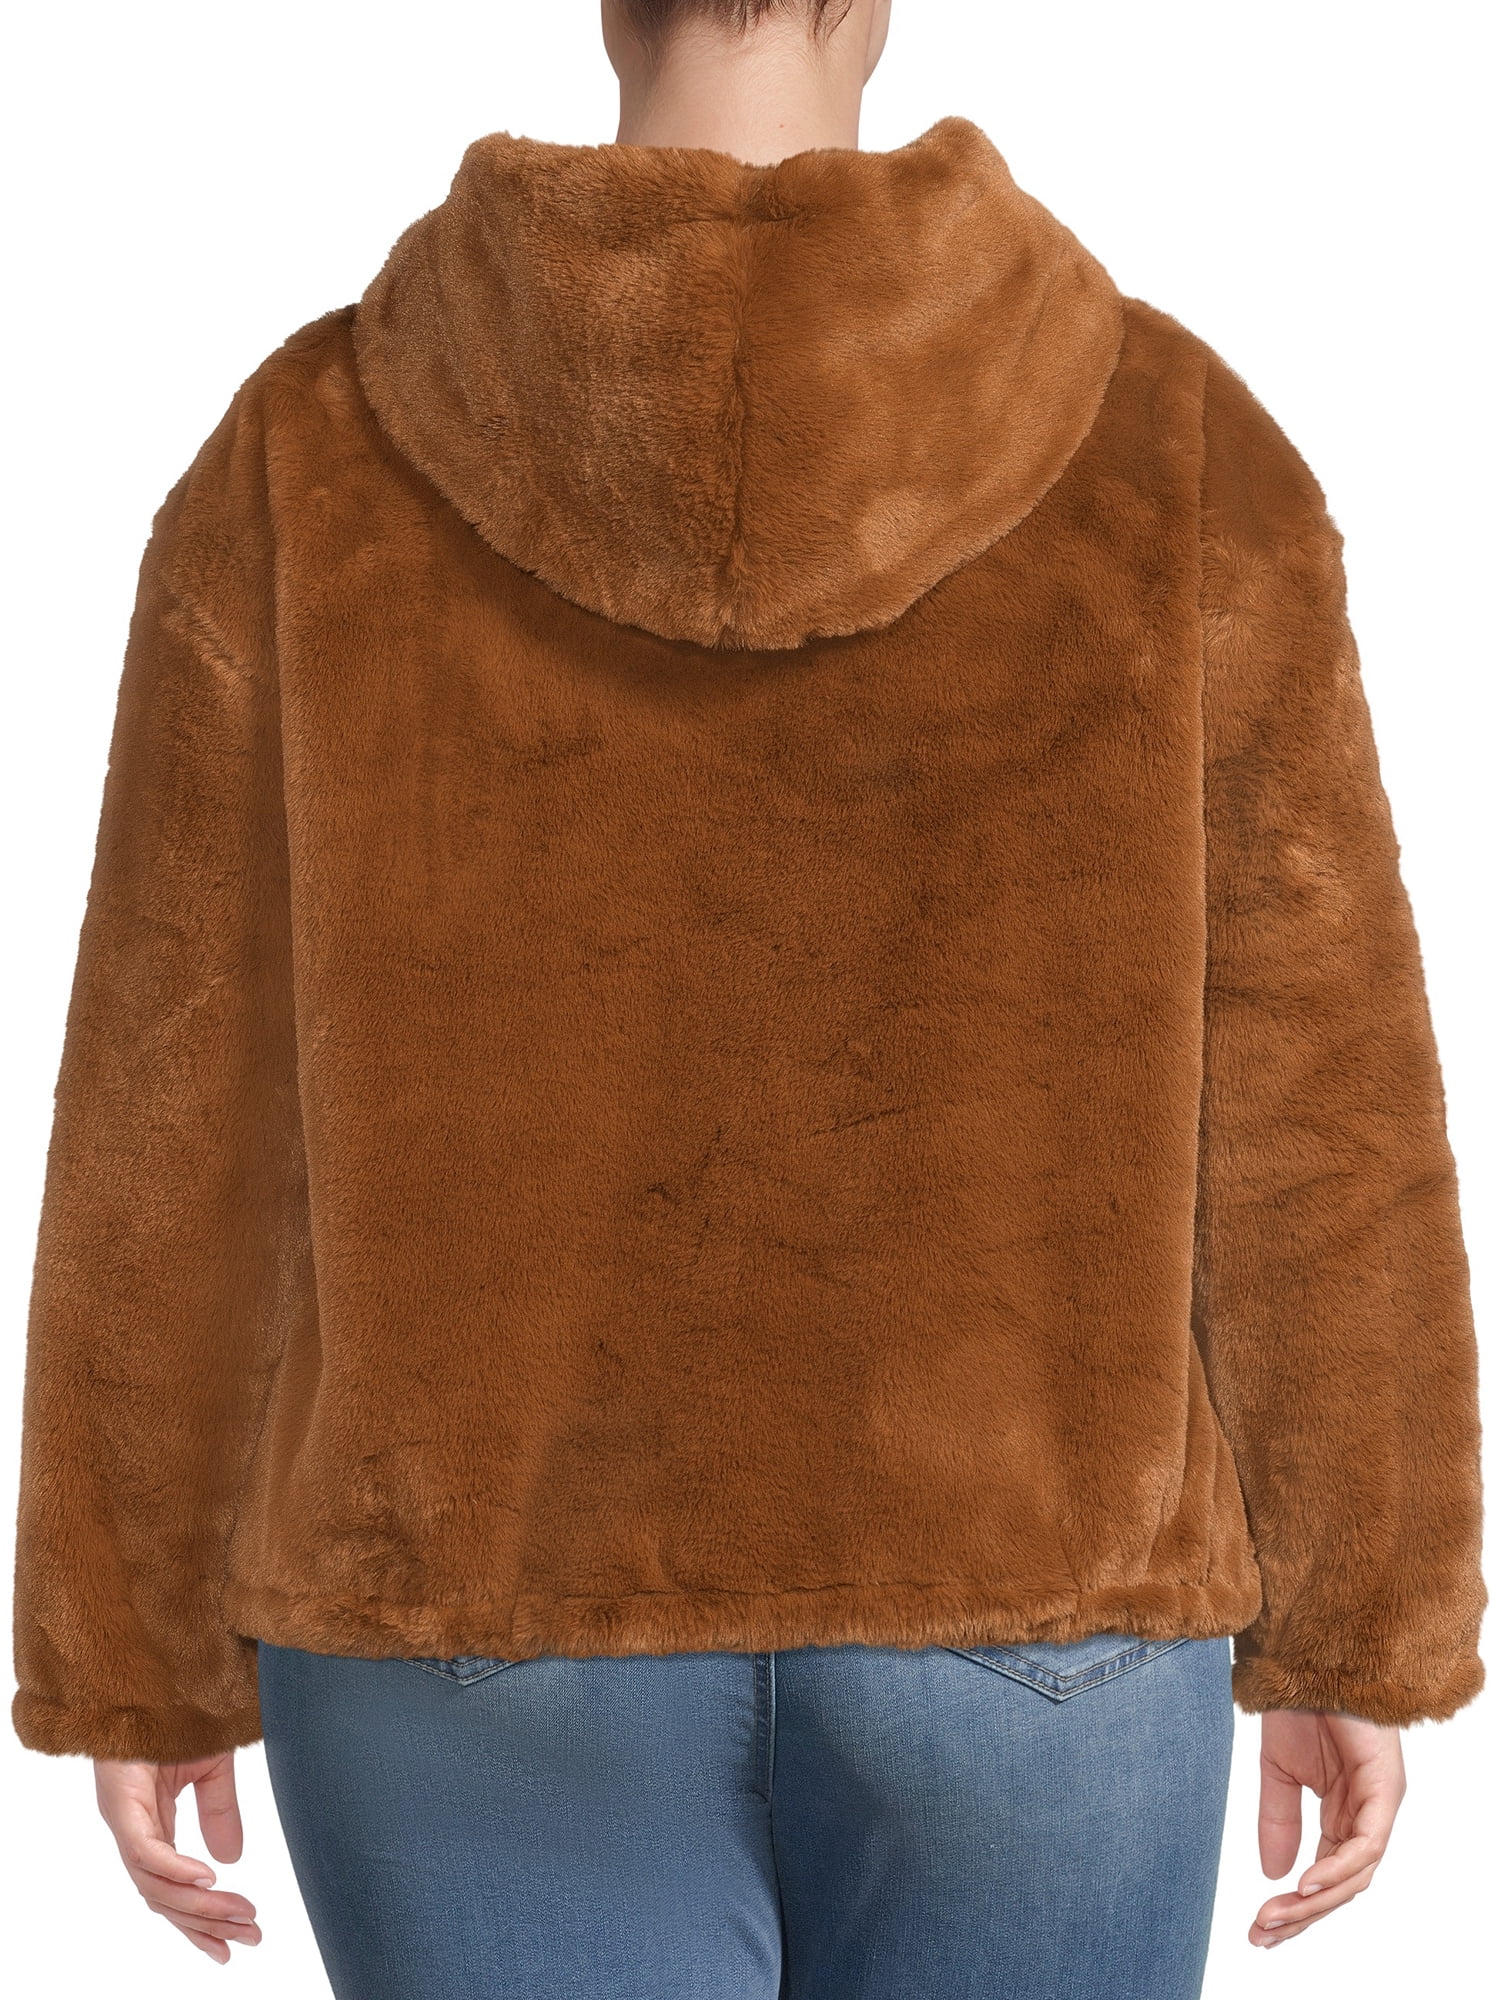 Lucky Brand Women's Plus Size Faux Fur Hooded Jacket - Walmart